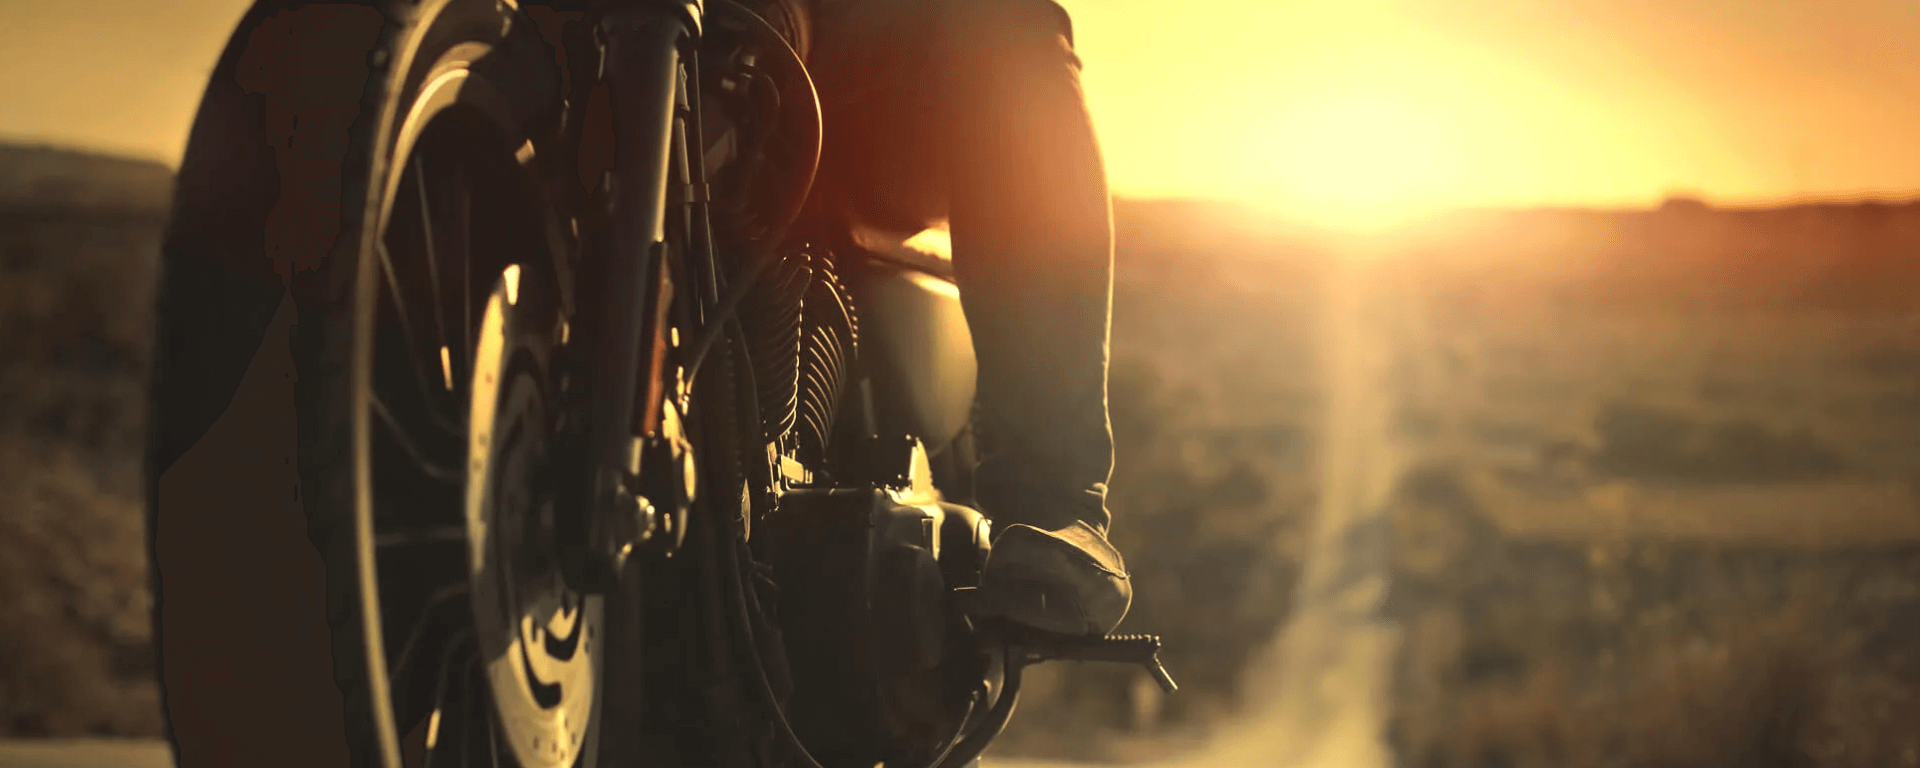 Dia do Motociclista: 3 Dicas de Renda Extra para essa Data Especial